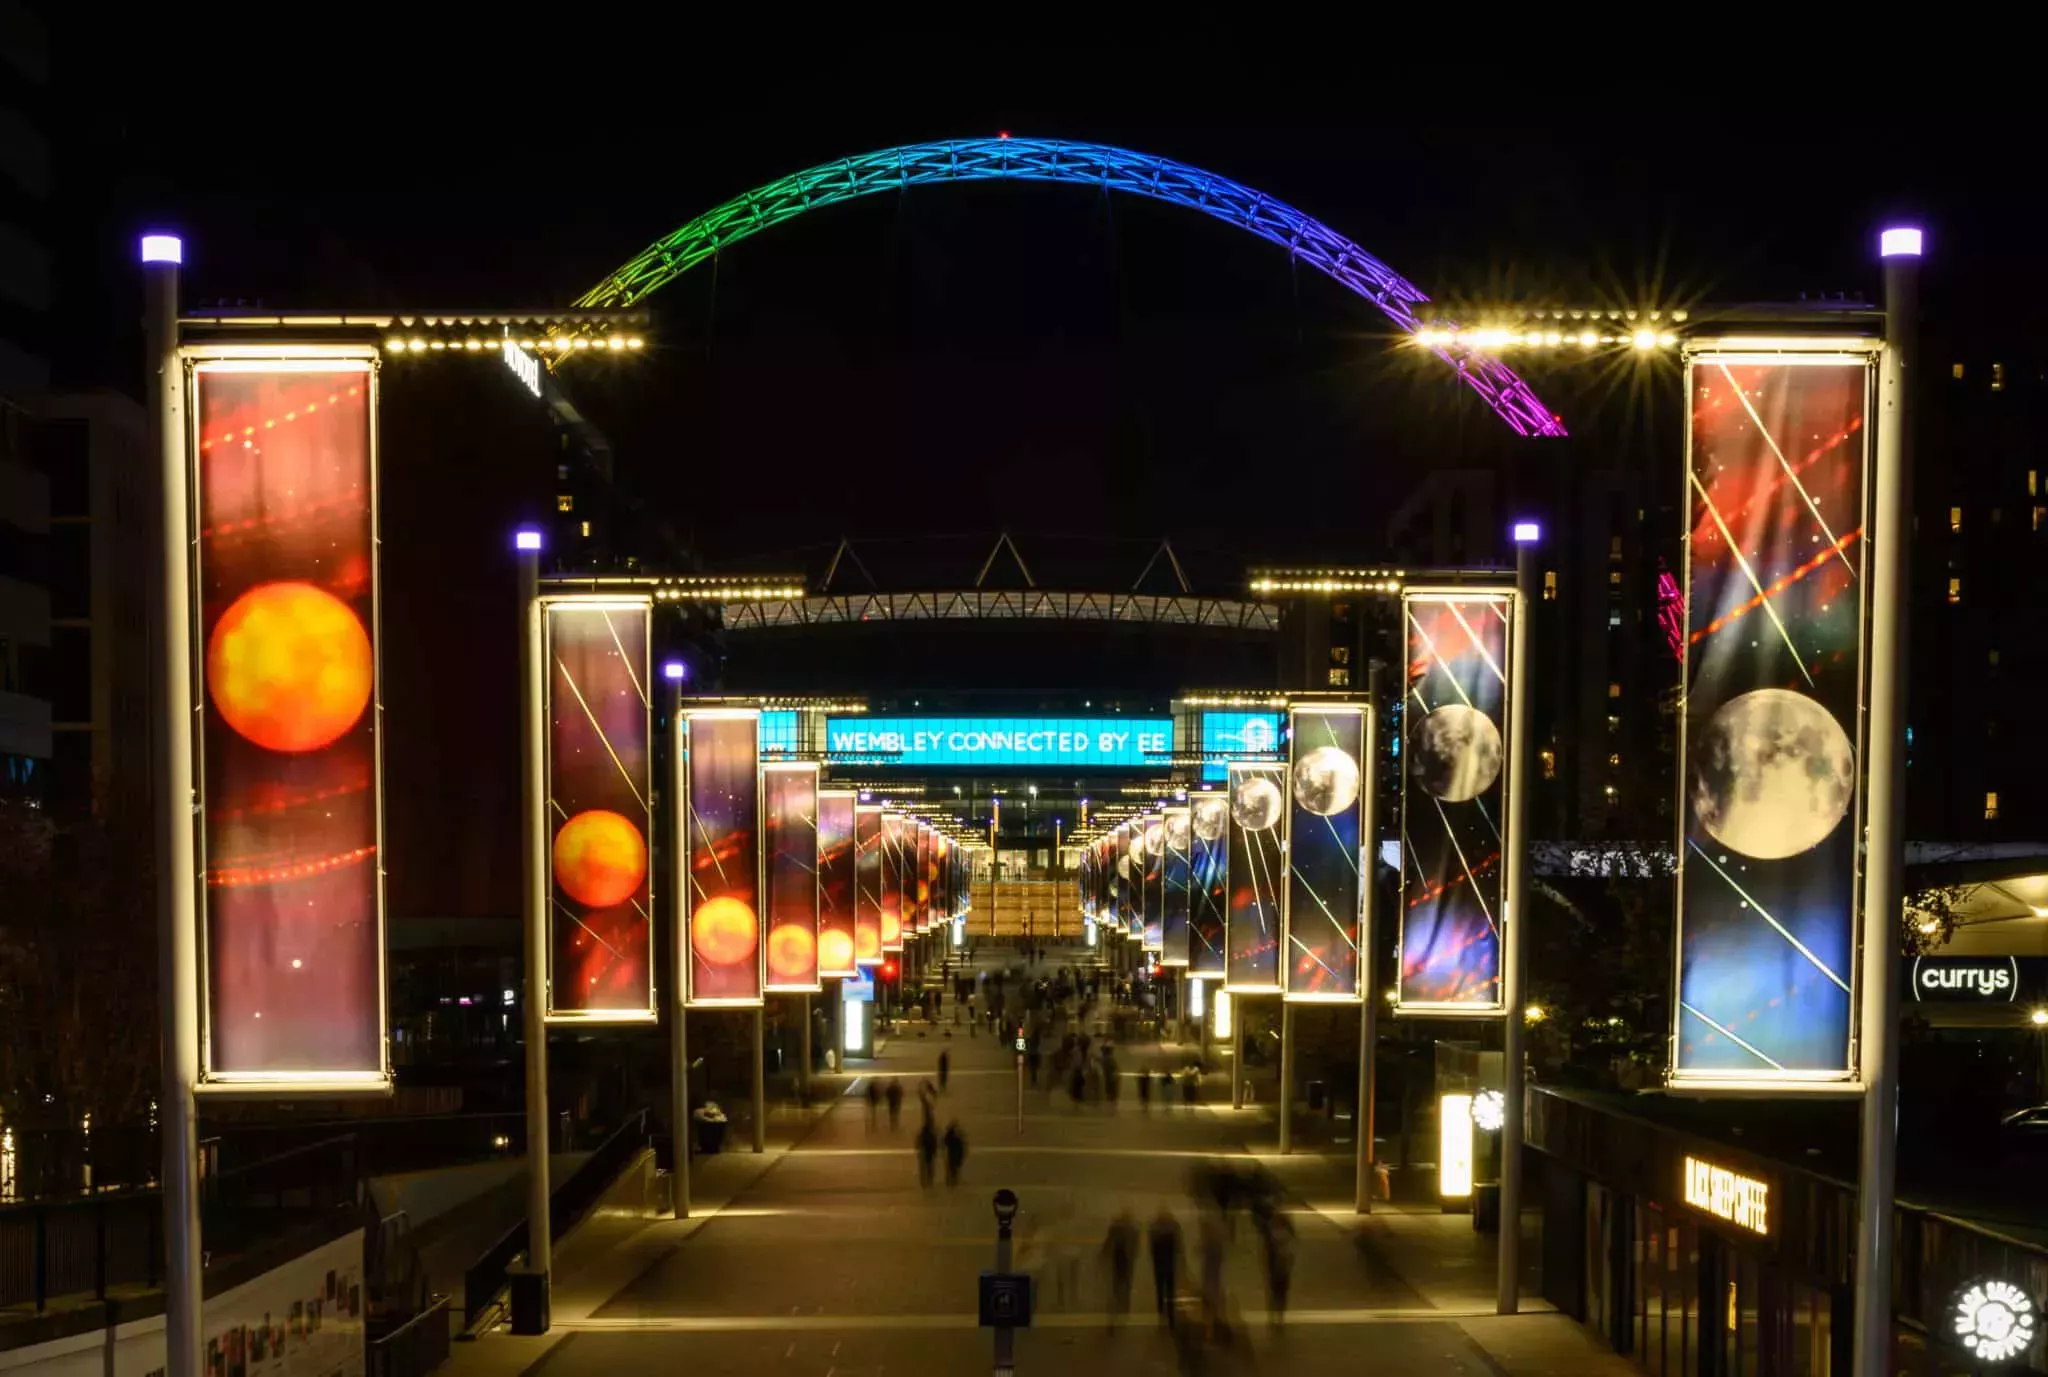 El estadio de Wembley se ilumina con los colores del arco iris en la disputa por los derechos LGBTQ+ y Qatar